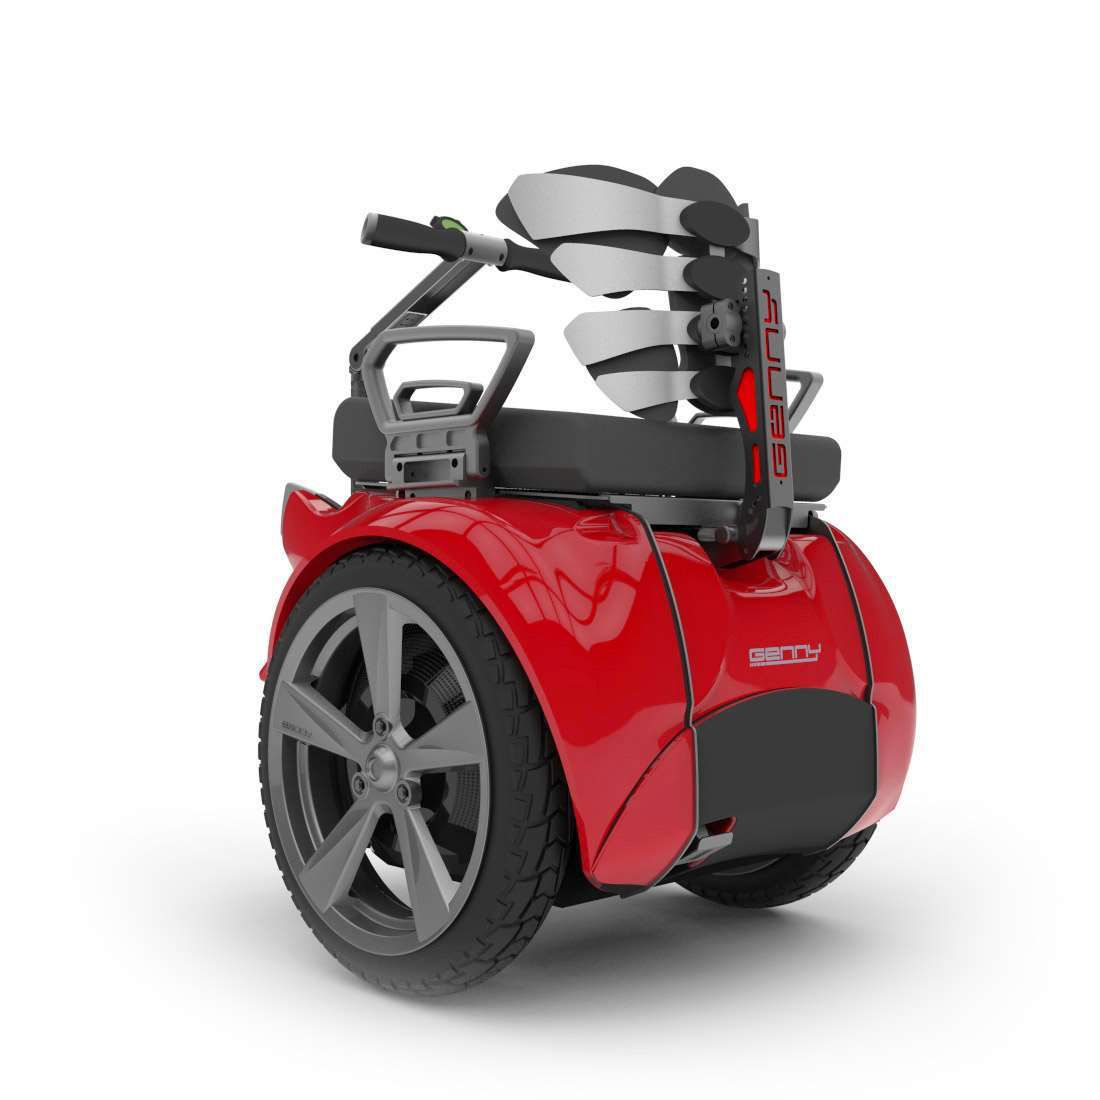 Vehículos, gadgets e inventos interesantes para personas con discapacidad motora: Segway Genny